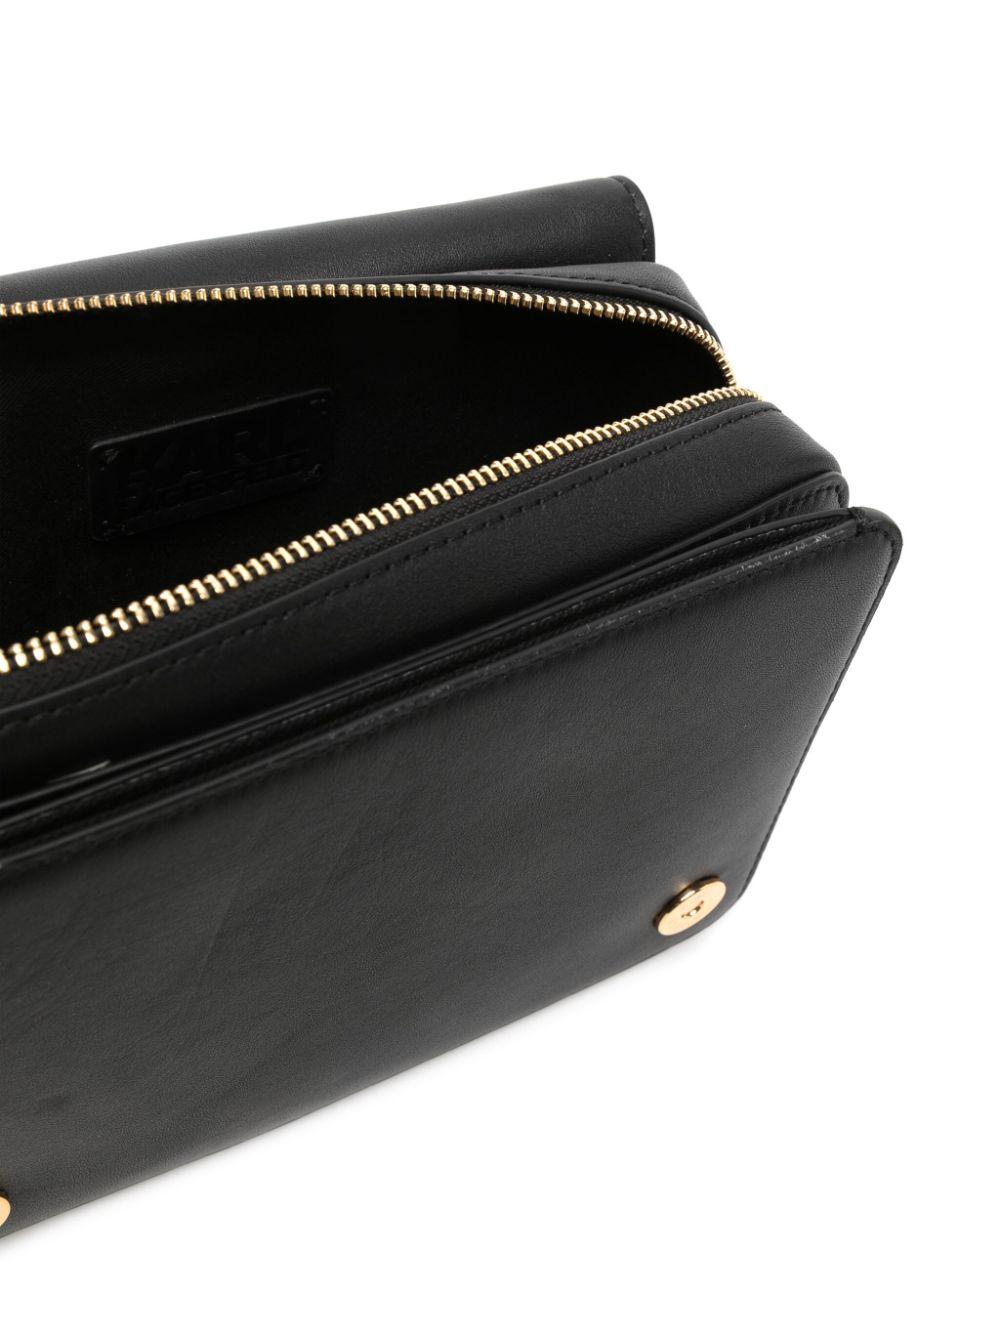 Karl Lagerfeld K/disk Shoulder Bag in Black